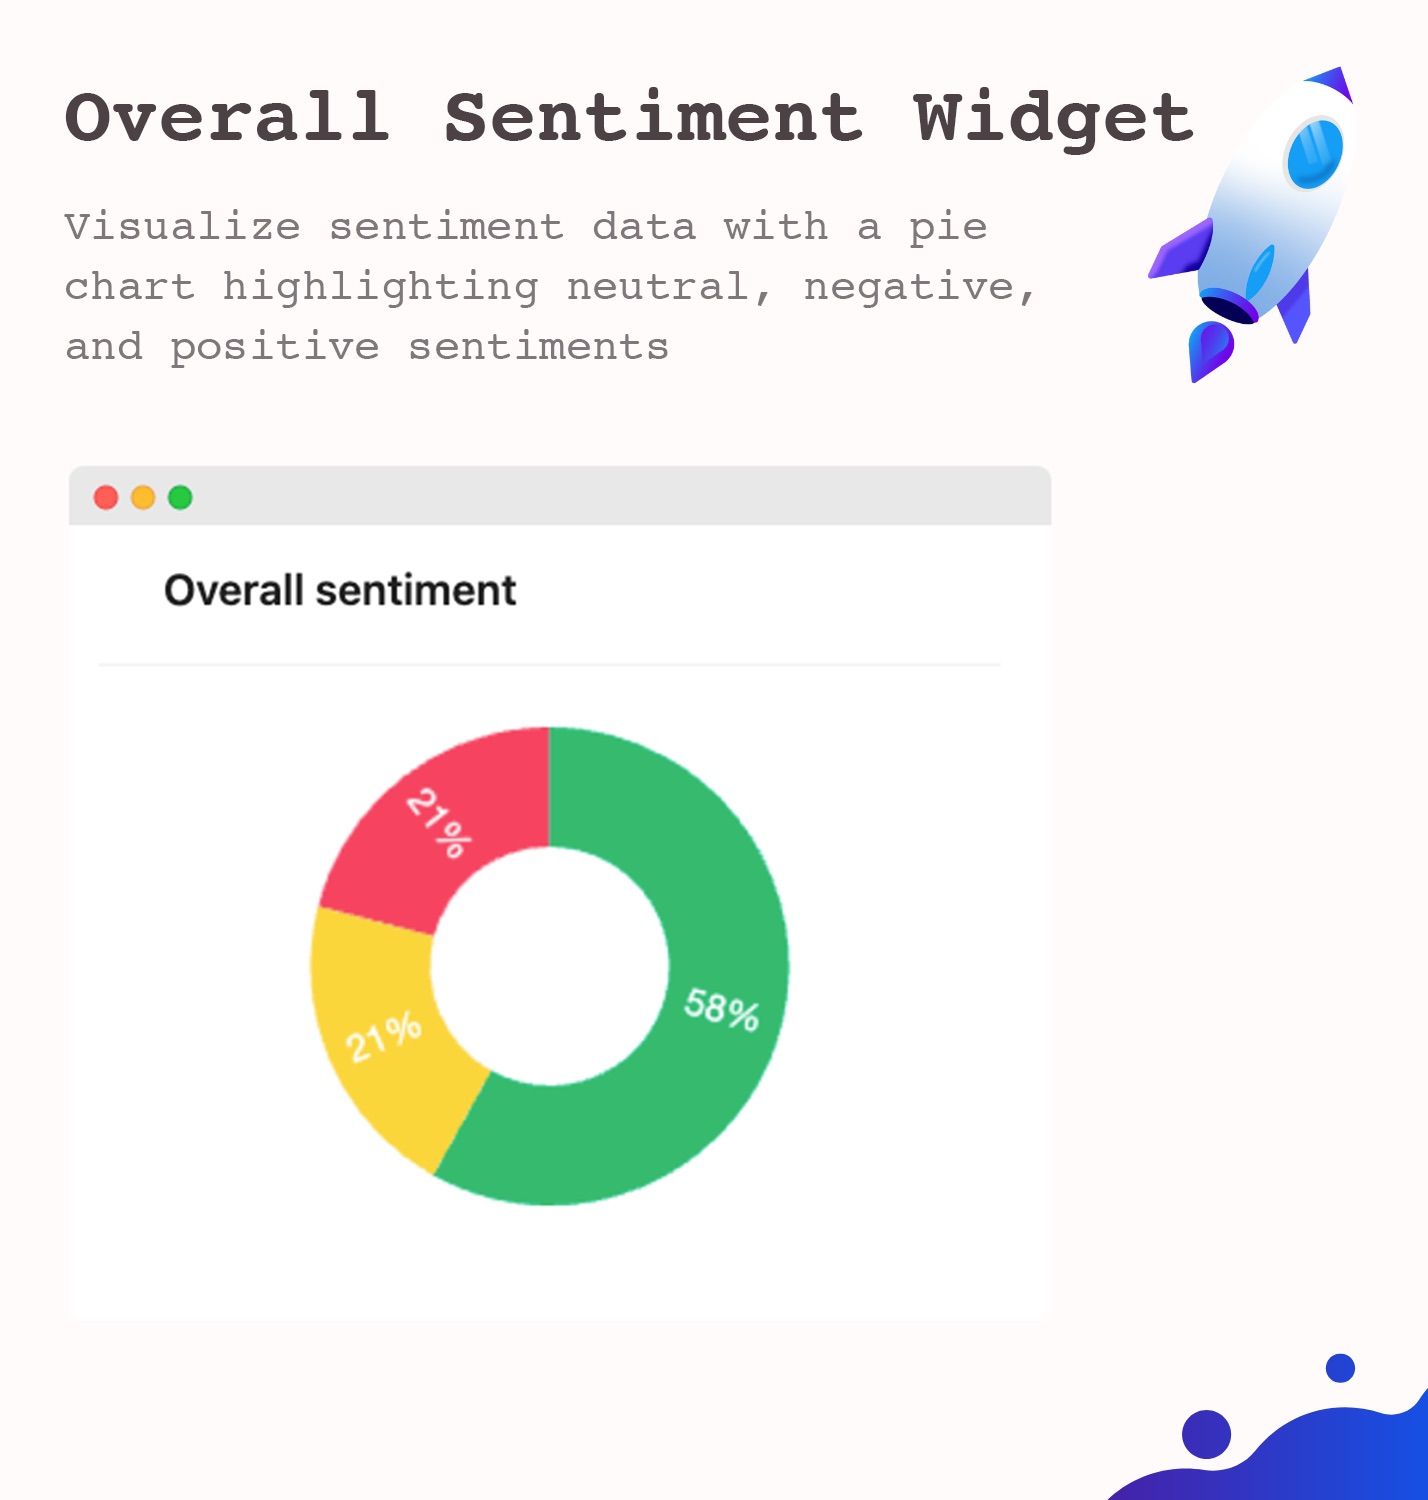 Overall sentiment widget